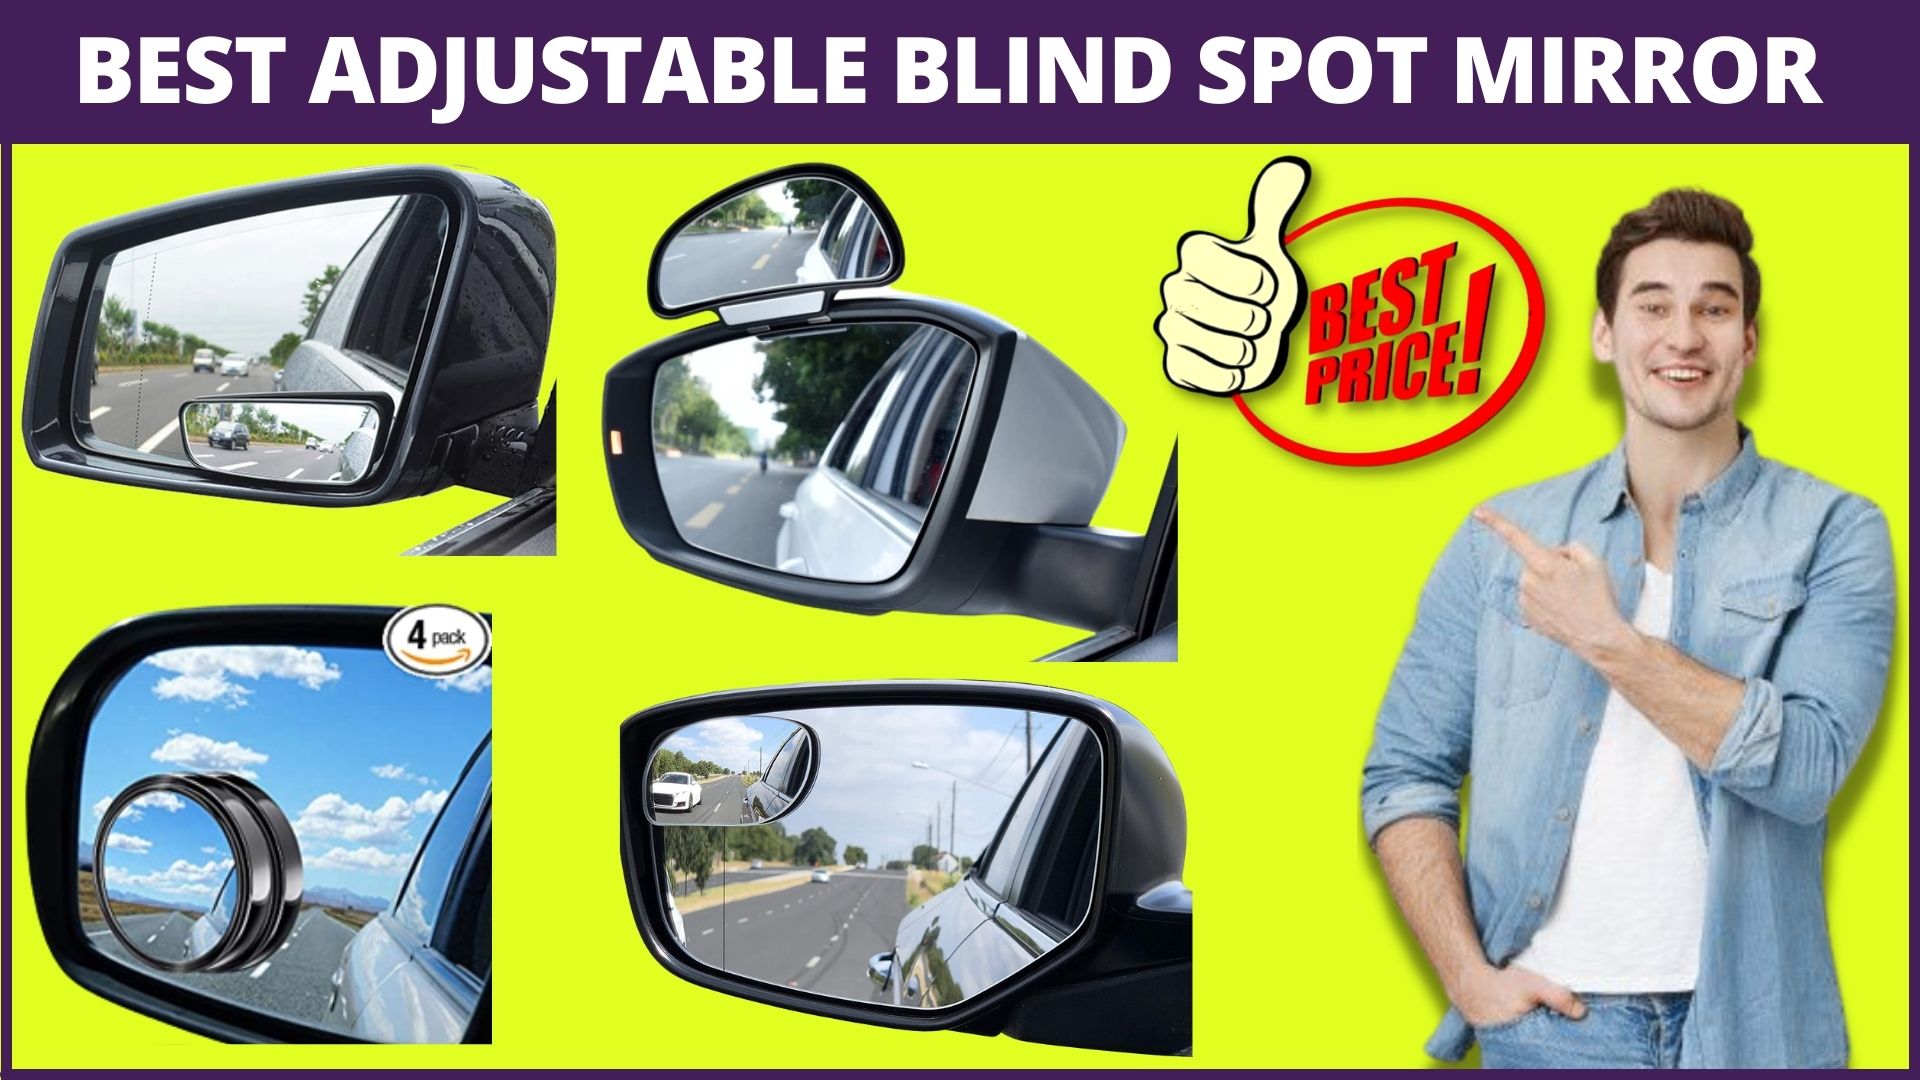 Best Adjustable Blind Spot Mirror For Car